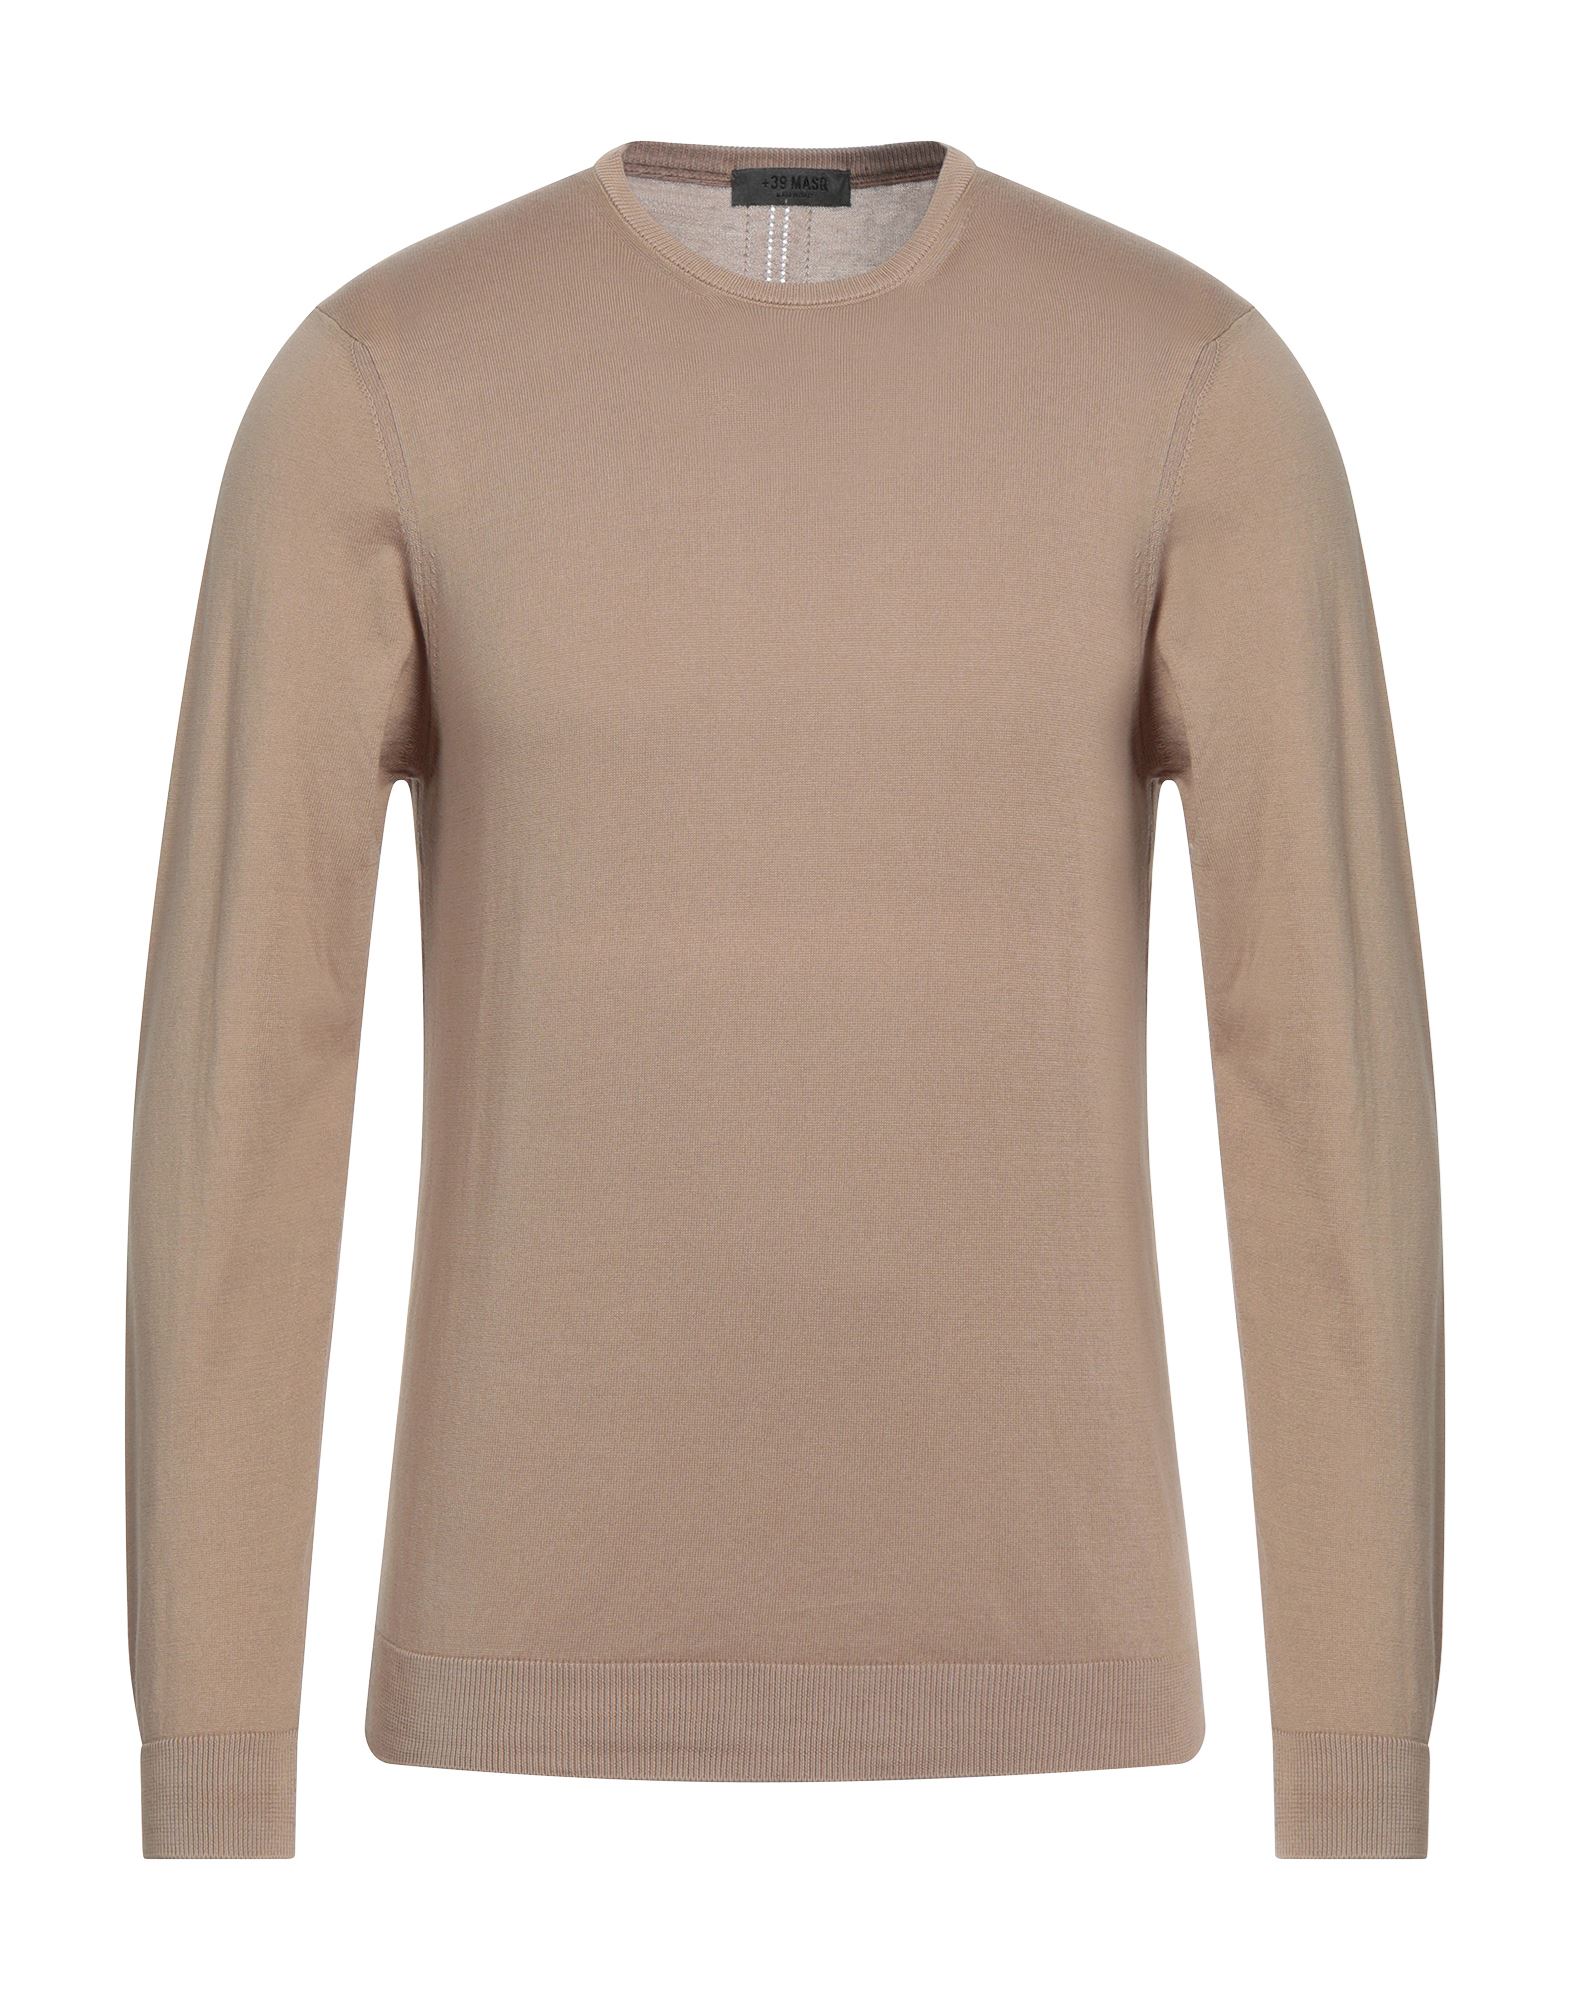 +39 Masq Man Sweater Light Brown Size 3xl Cotton In Beige